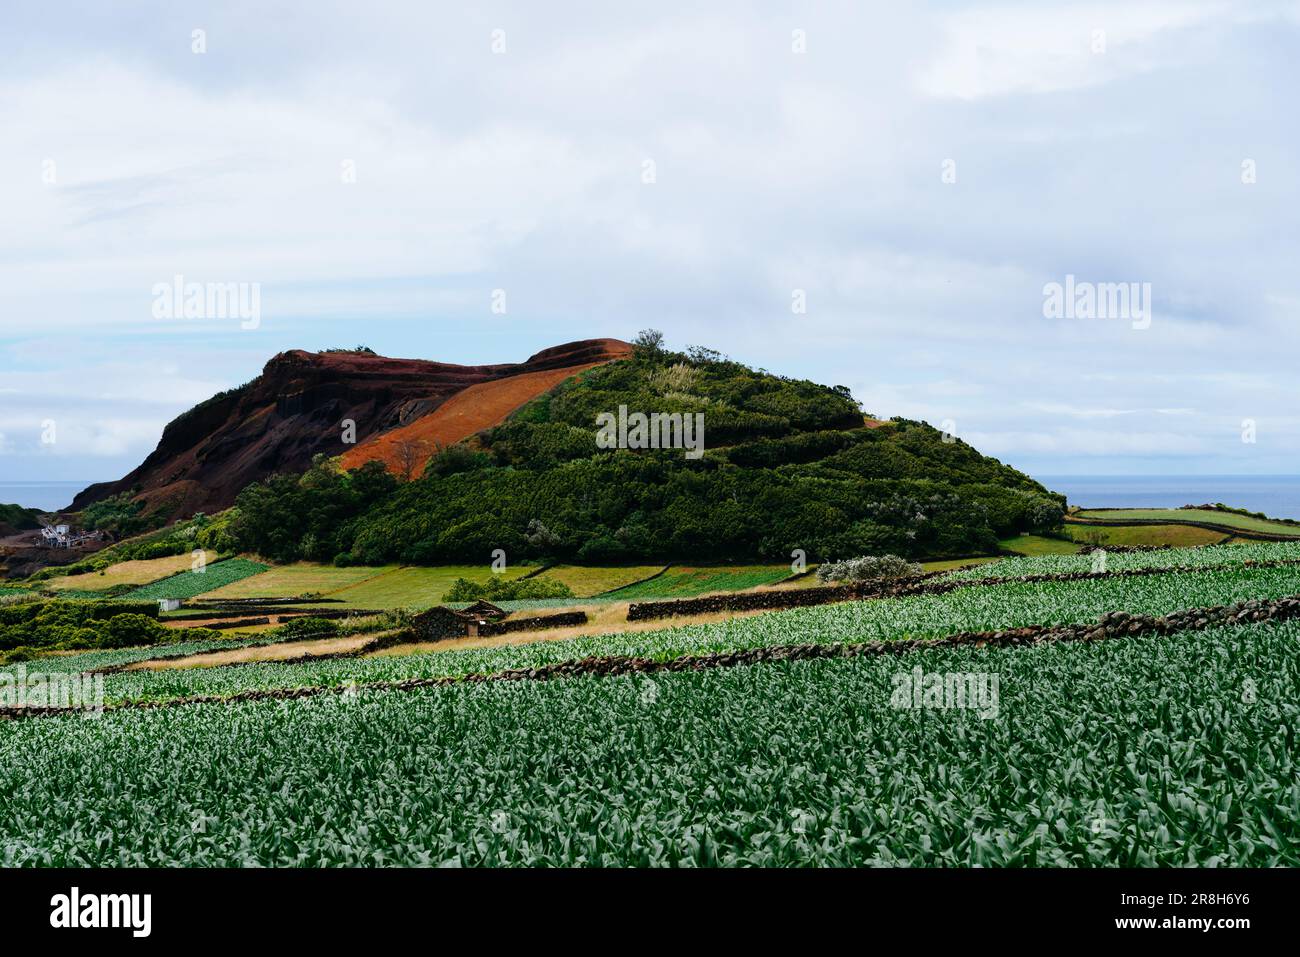 Antico vulcano circondato da terreni agricoli parcelato per l'agricoltura in vivaci colori verdi. Campi di mais. Pico Dona Joana. Isola di Terceira, Azzorre, Portuga Foto Stock